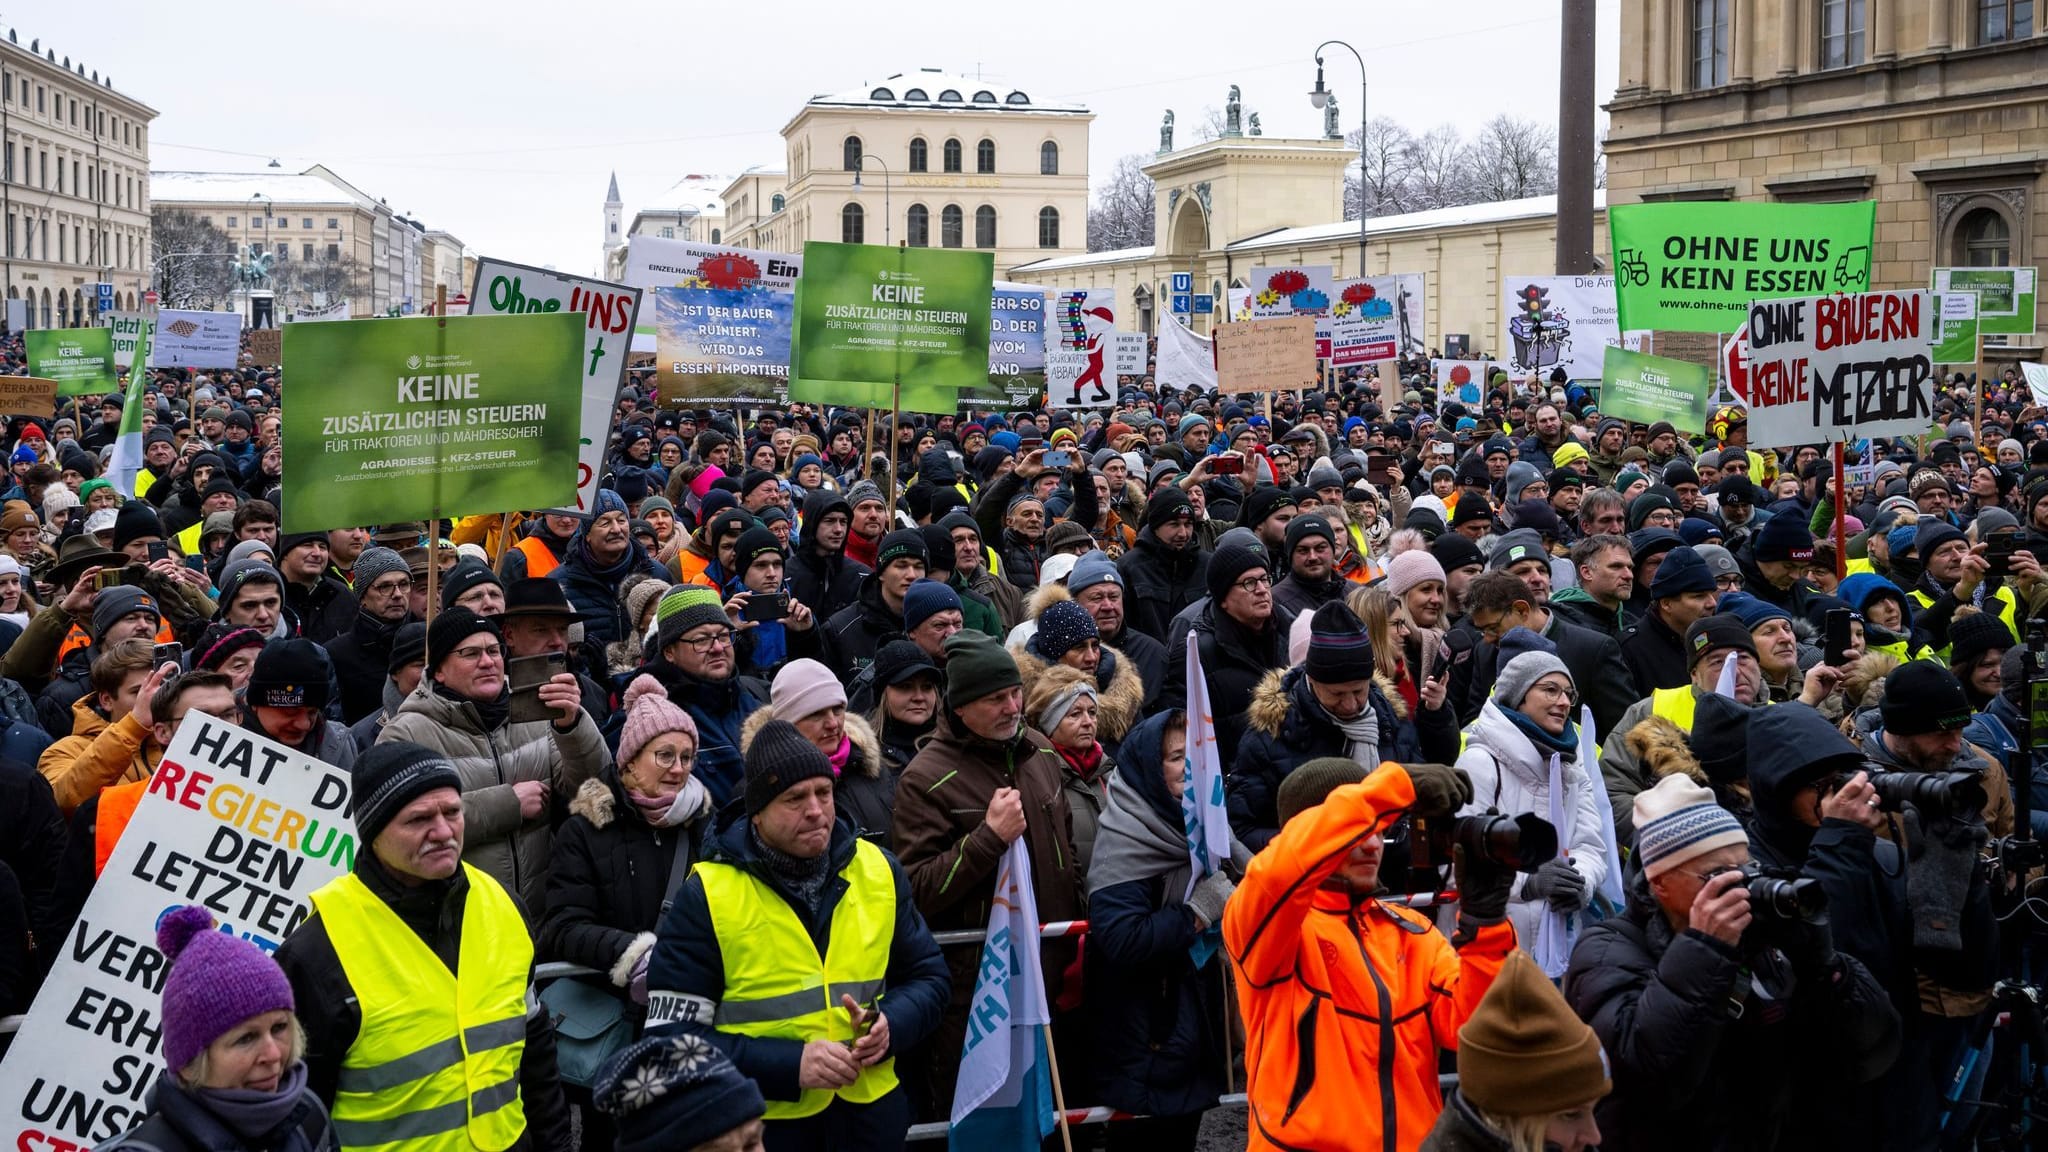 Bauernproteste: Grüne bei Kundgebung in München ausgebuht | Liveblog